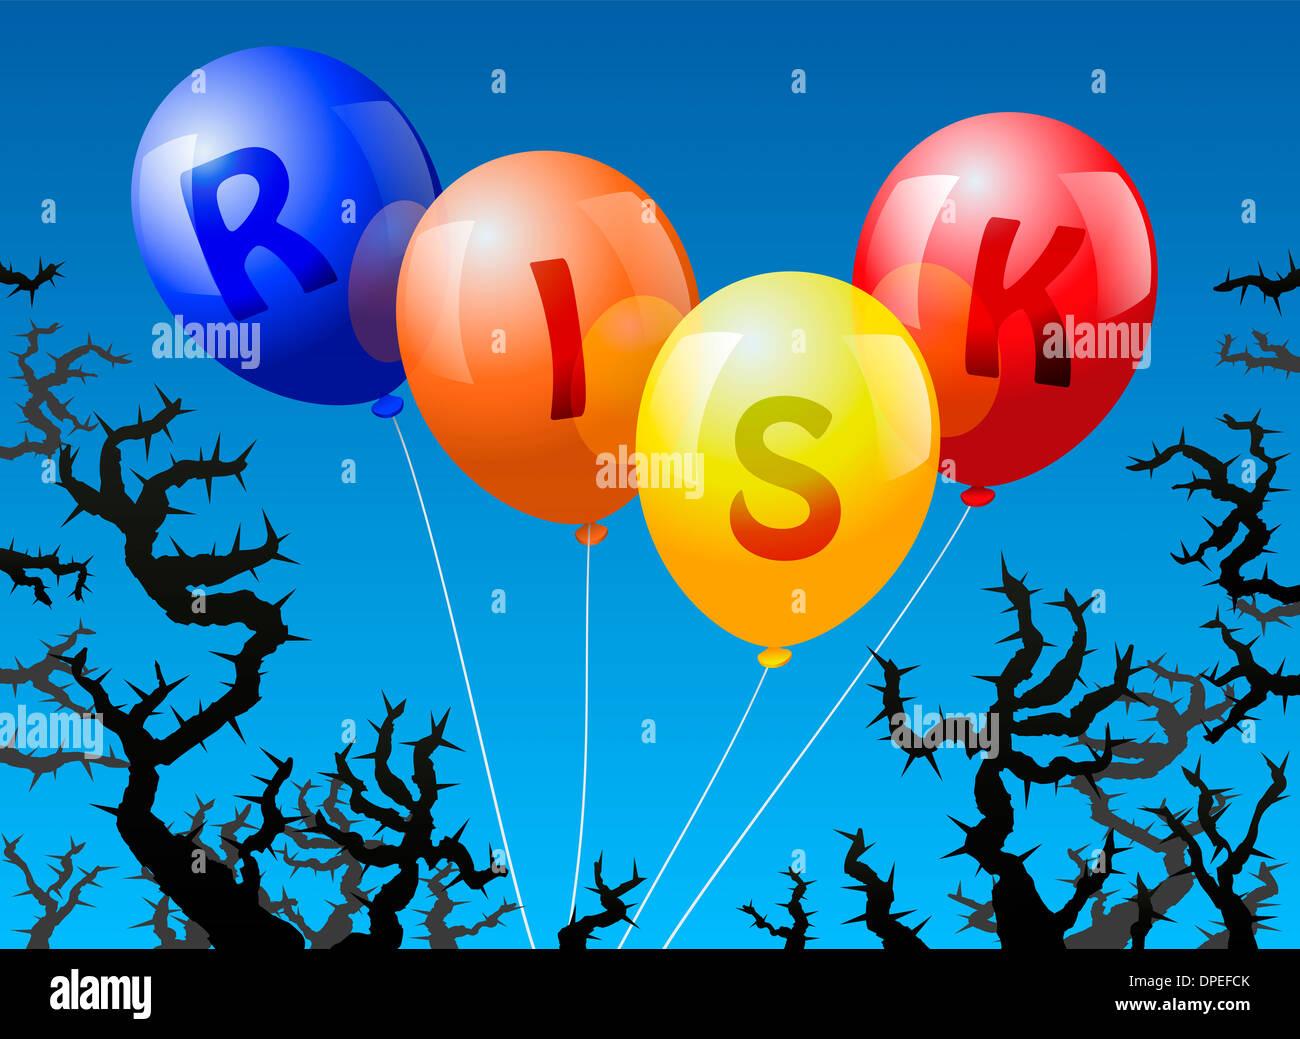 Vier Ballons, die mit dem Wort Gefahr gekennzeichnet sind, droht der Dornen. Stockfoto